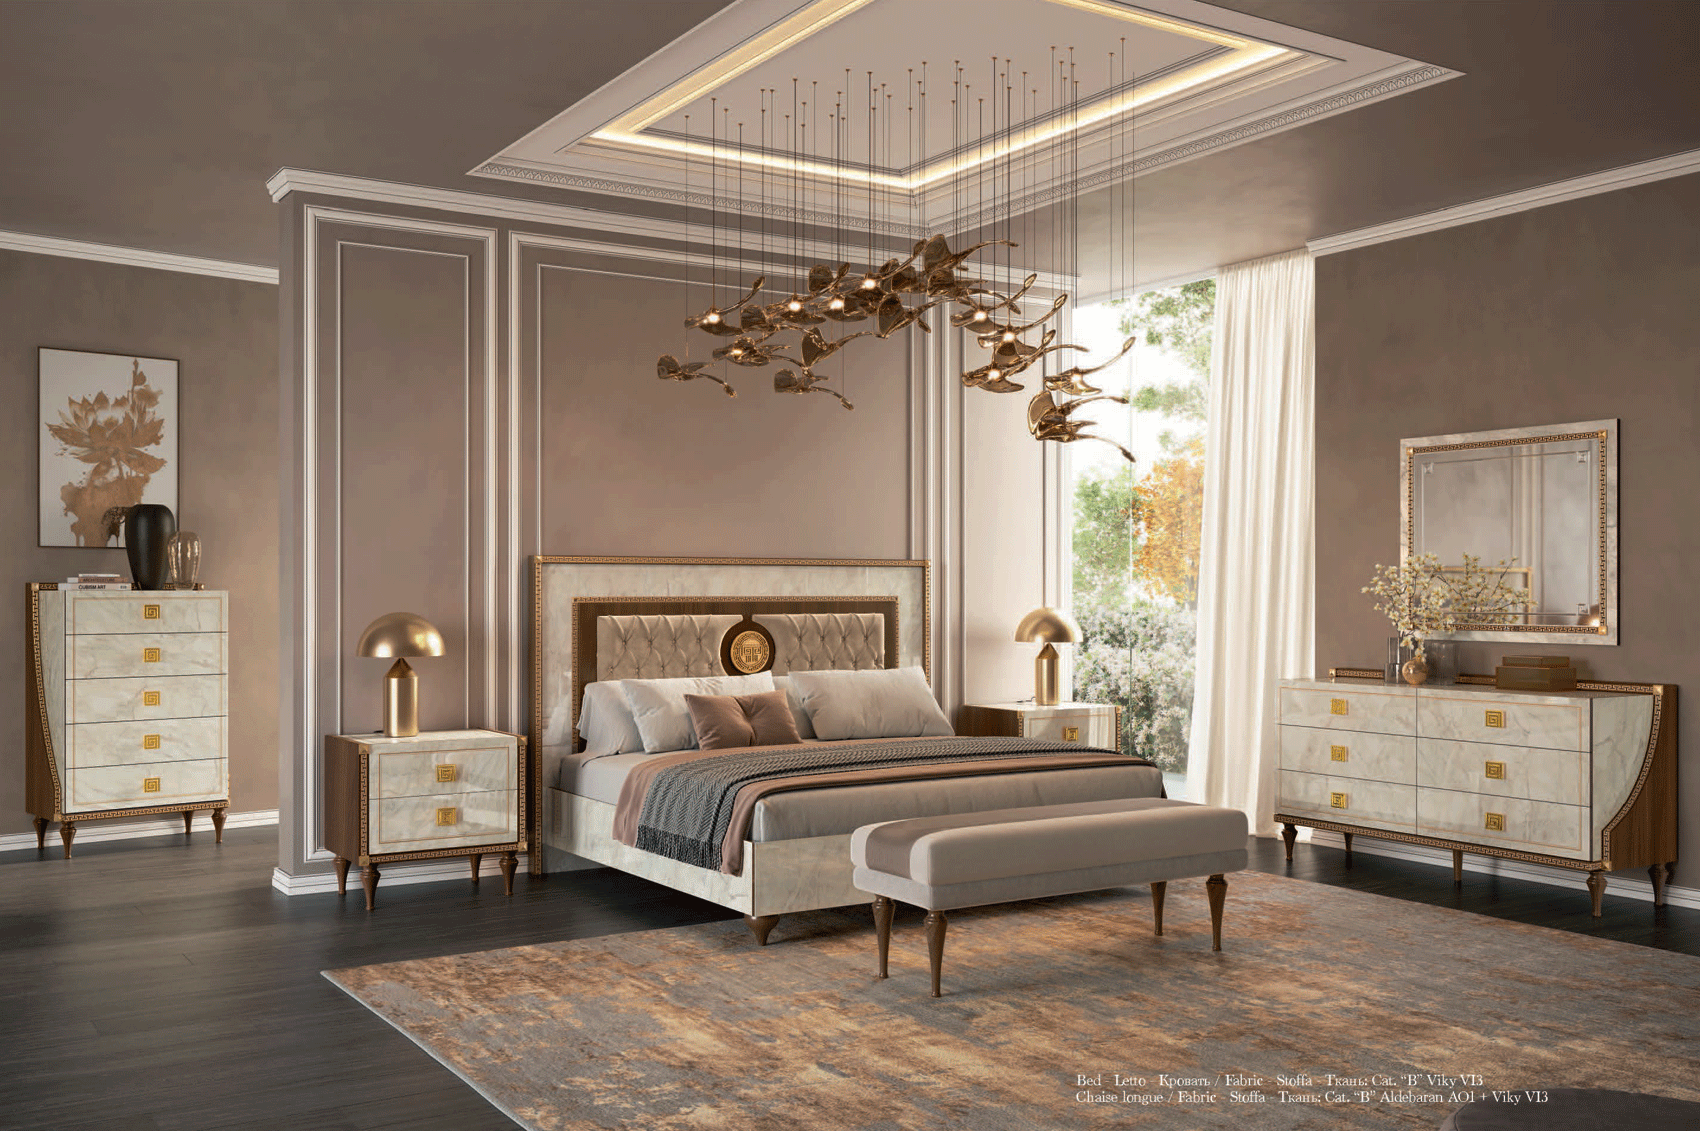 Bedroom Furniture Nightstands Romantica Bedroom Additional Items